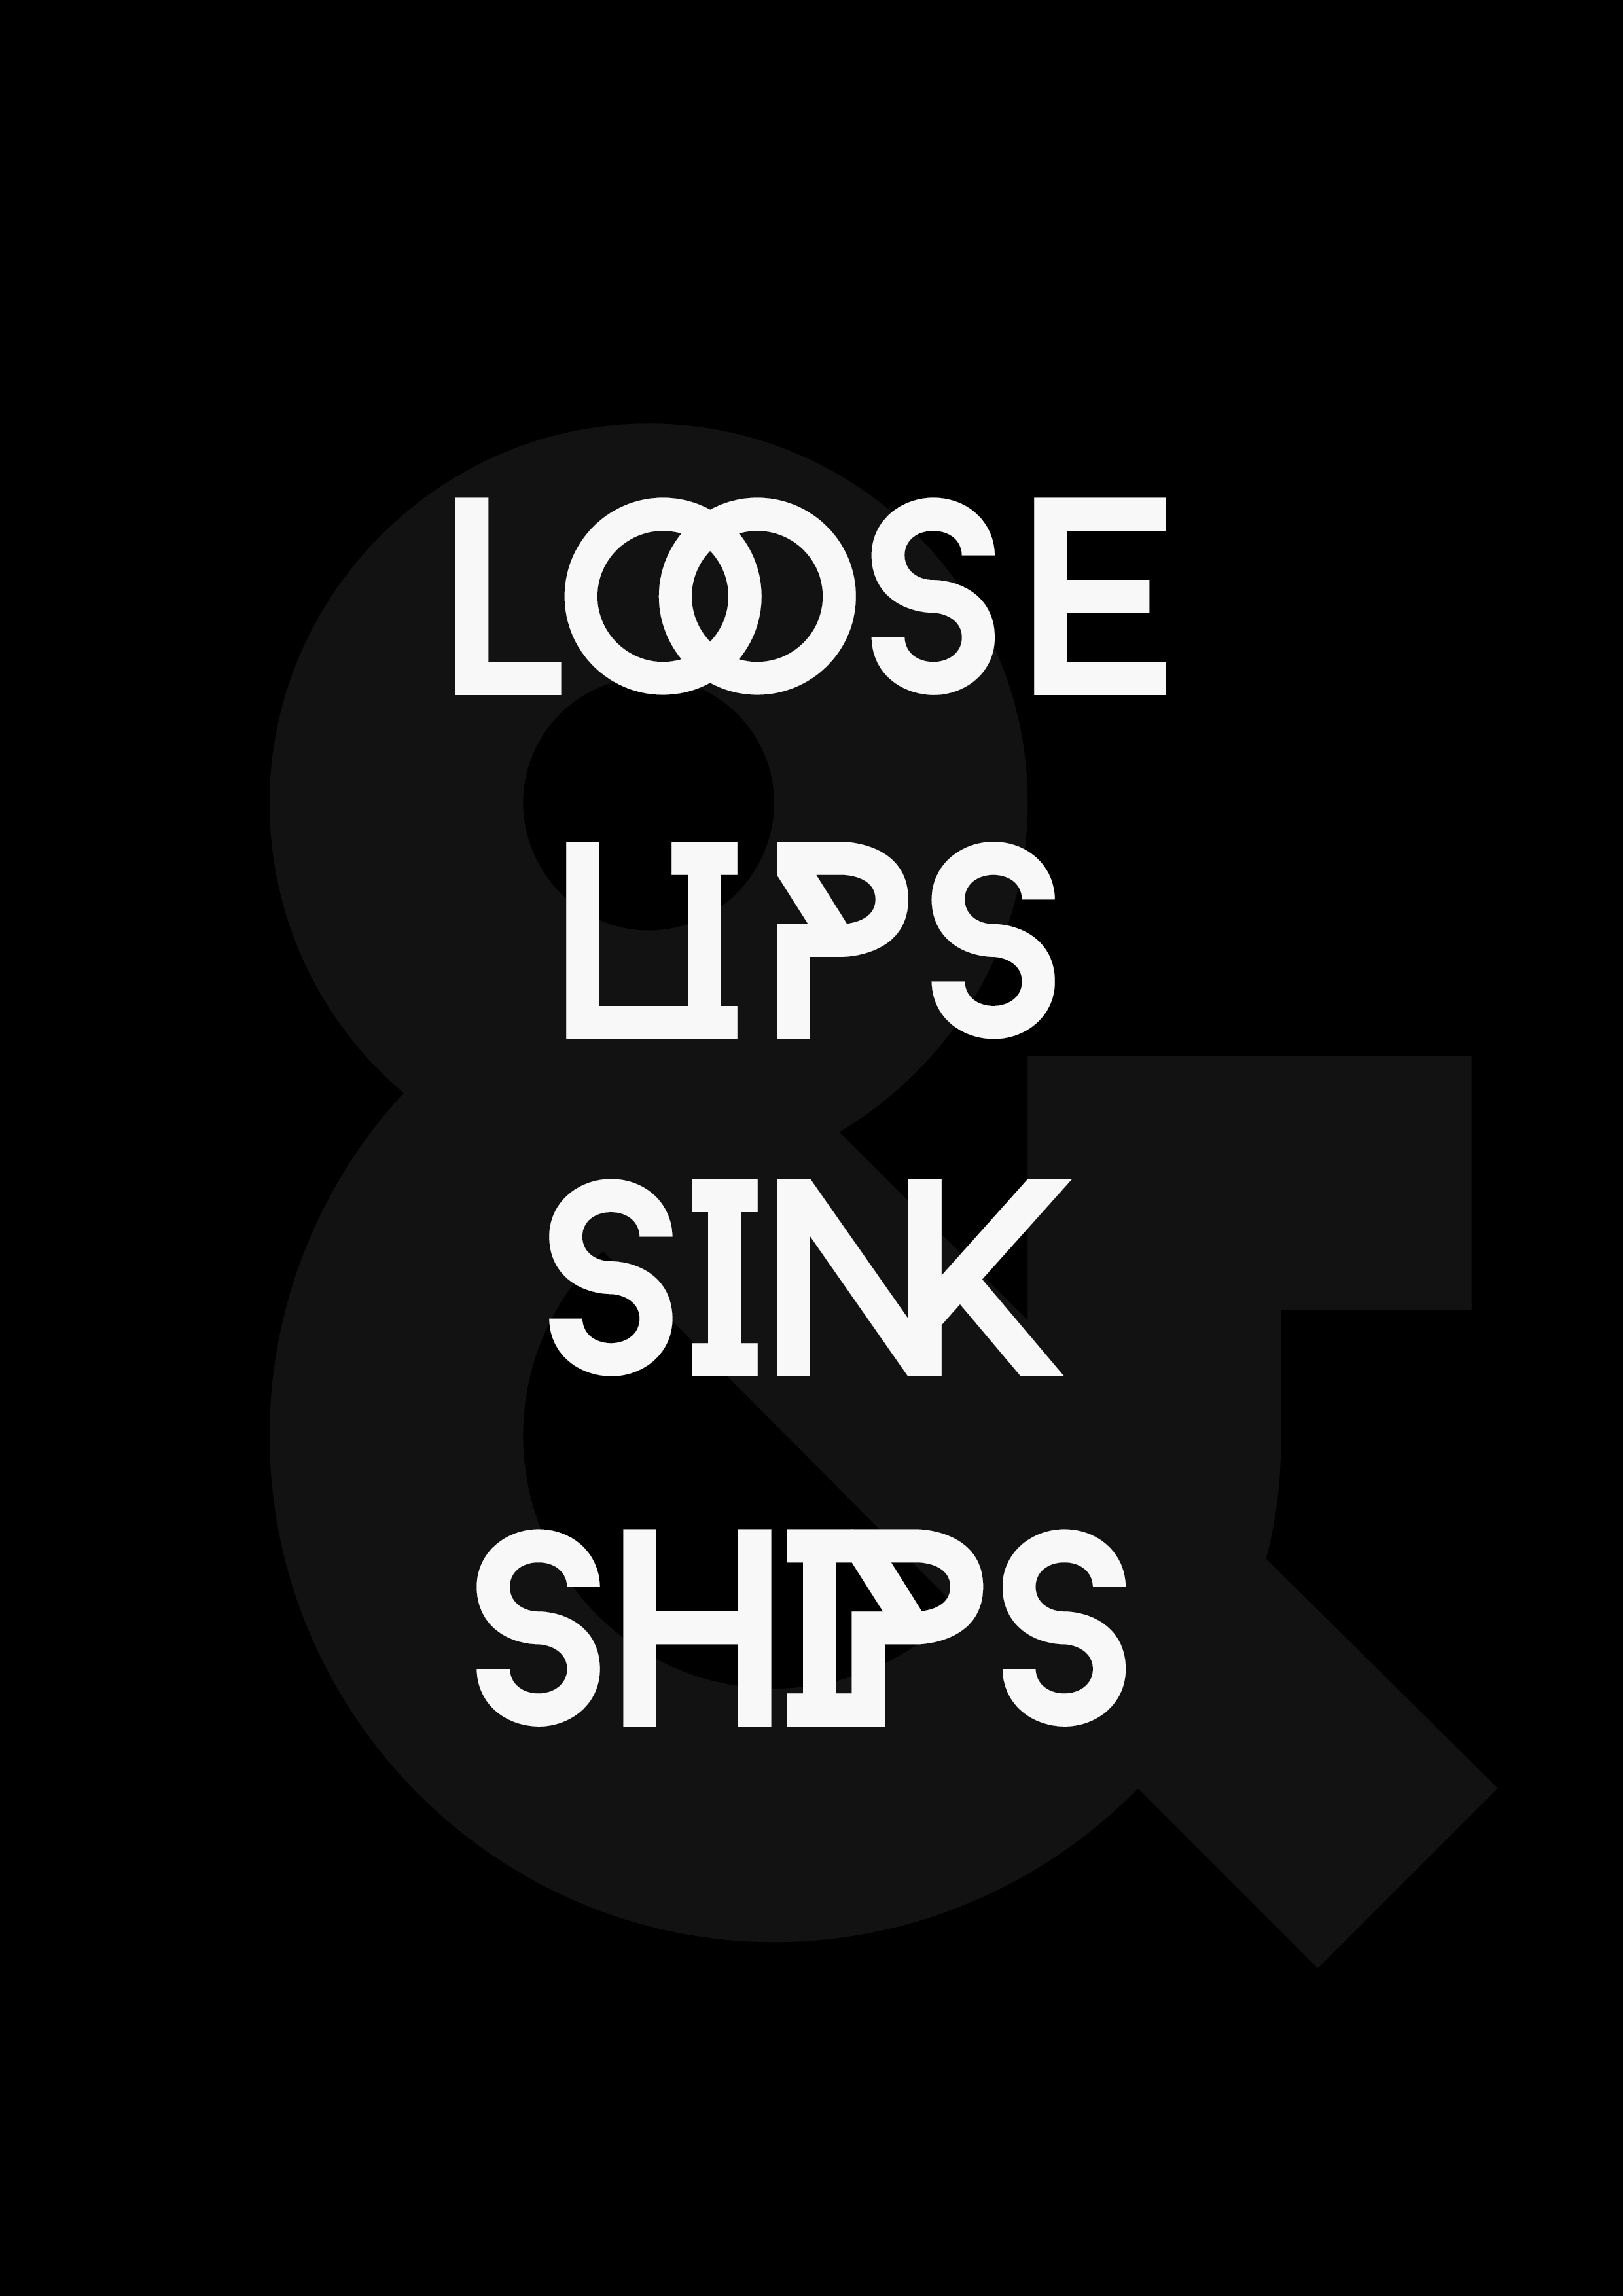 Loose Lips Sink Ships By Demoid On Deviantart